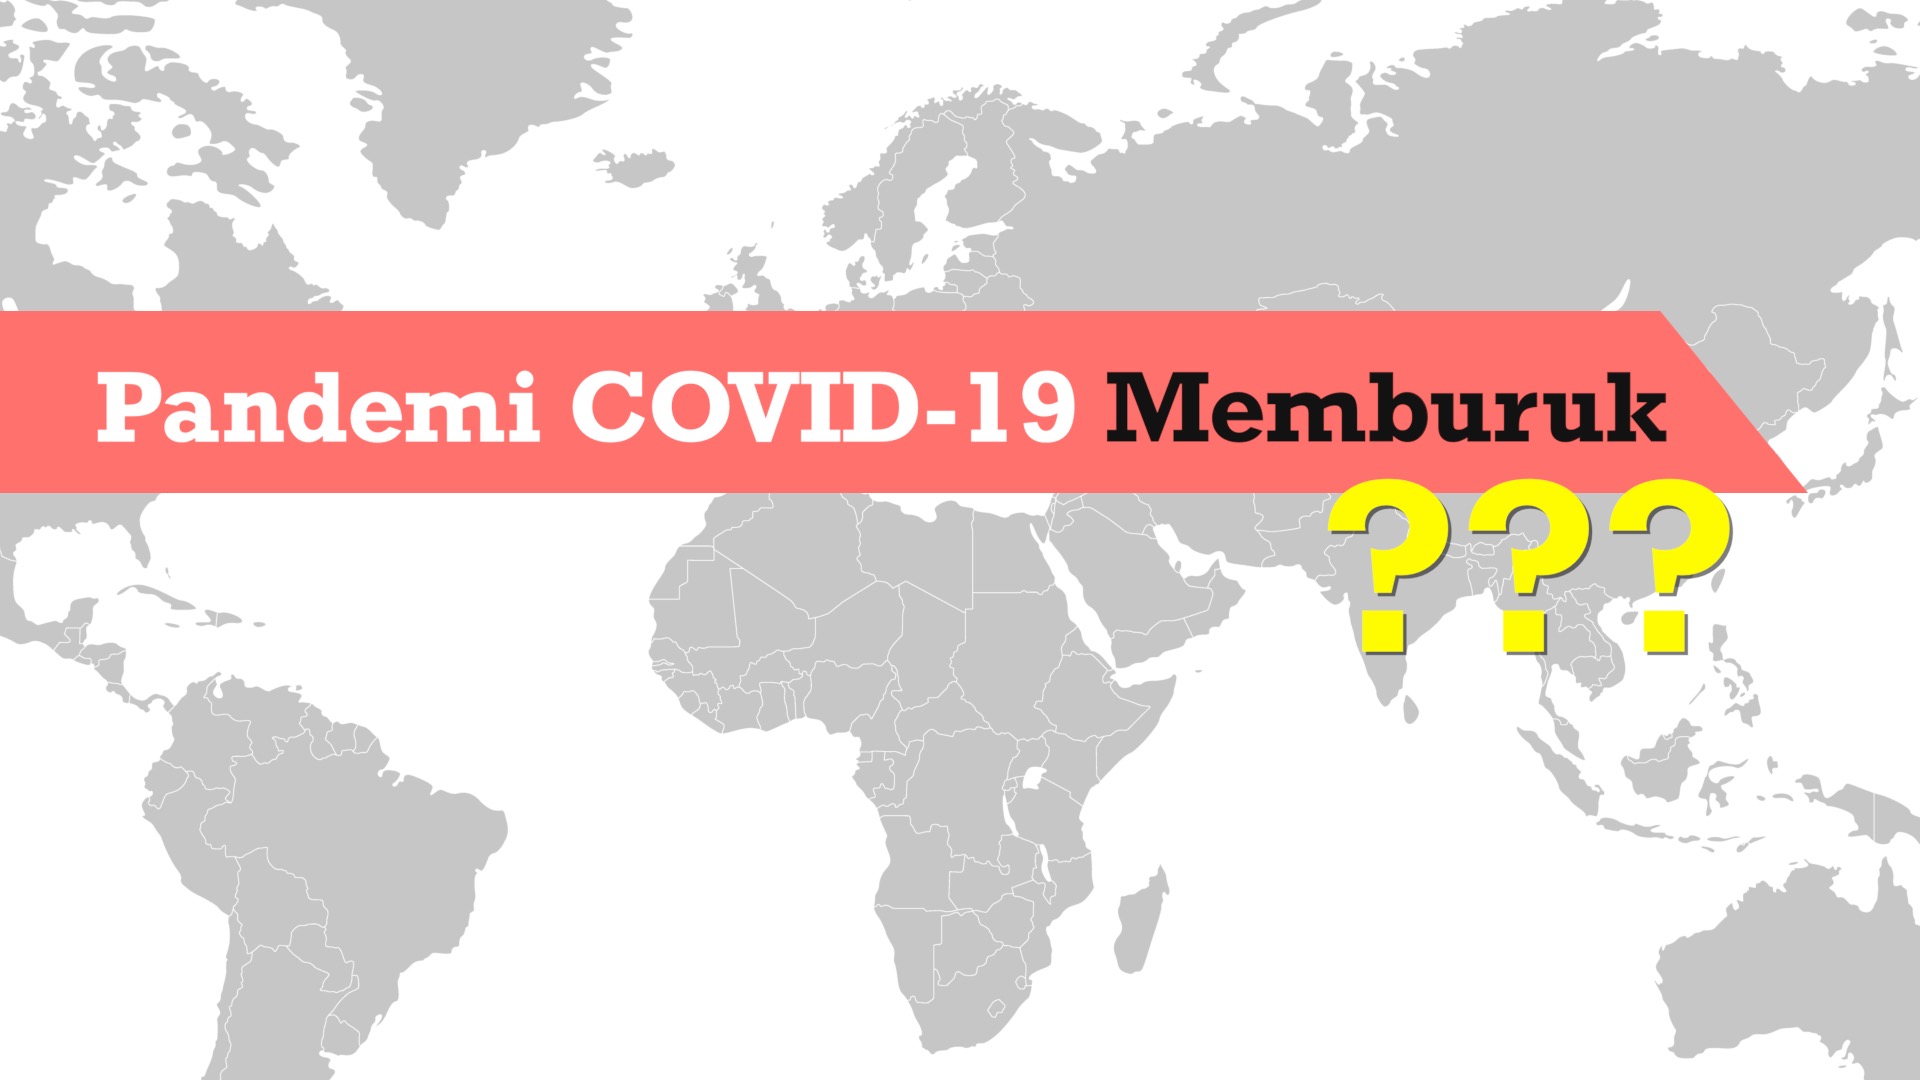 Pandemi COVID-19 Secara Global Memburuk?